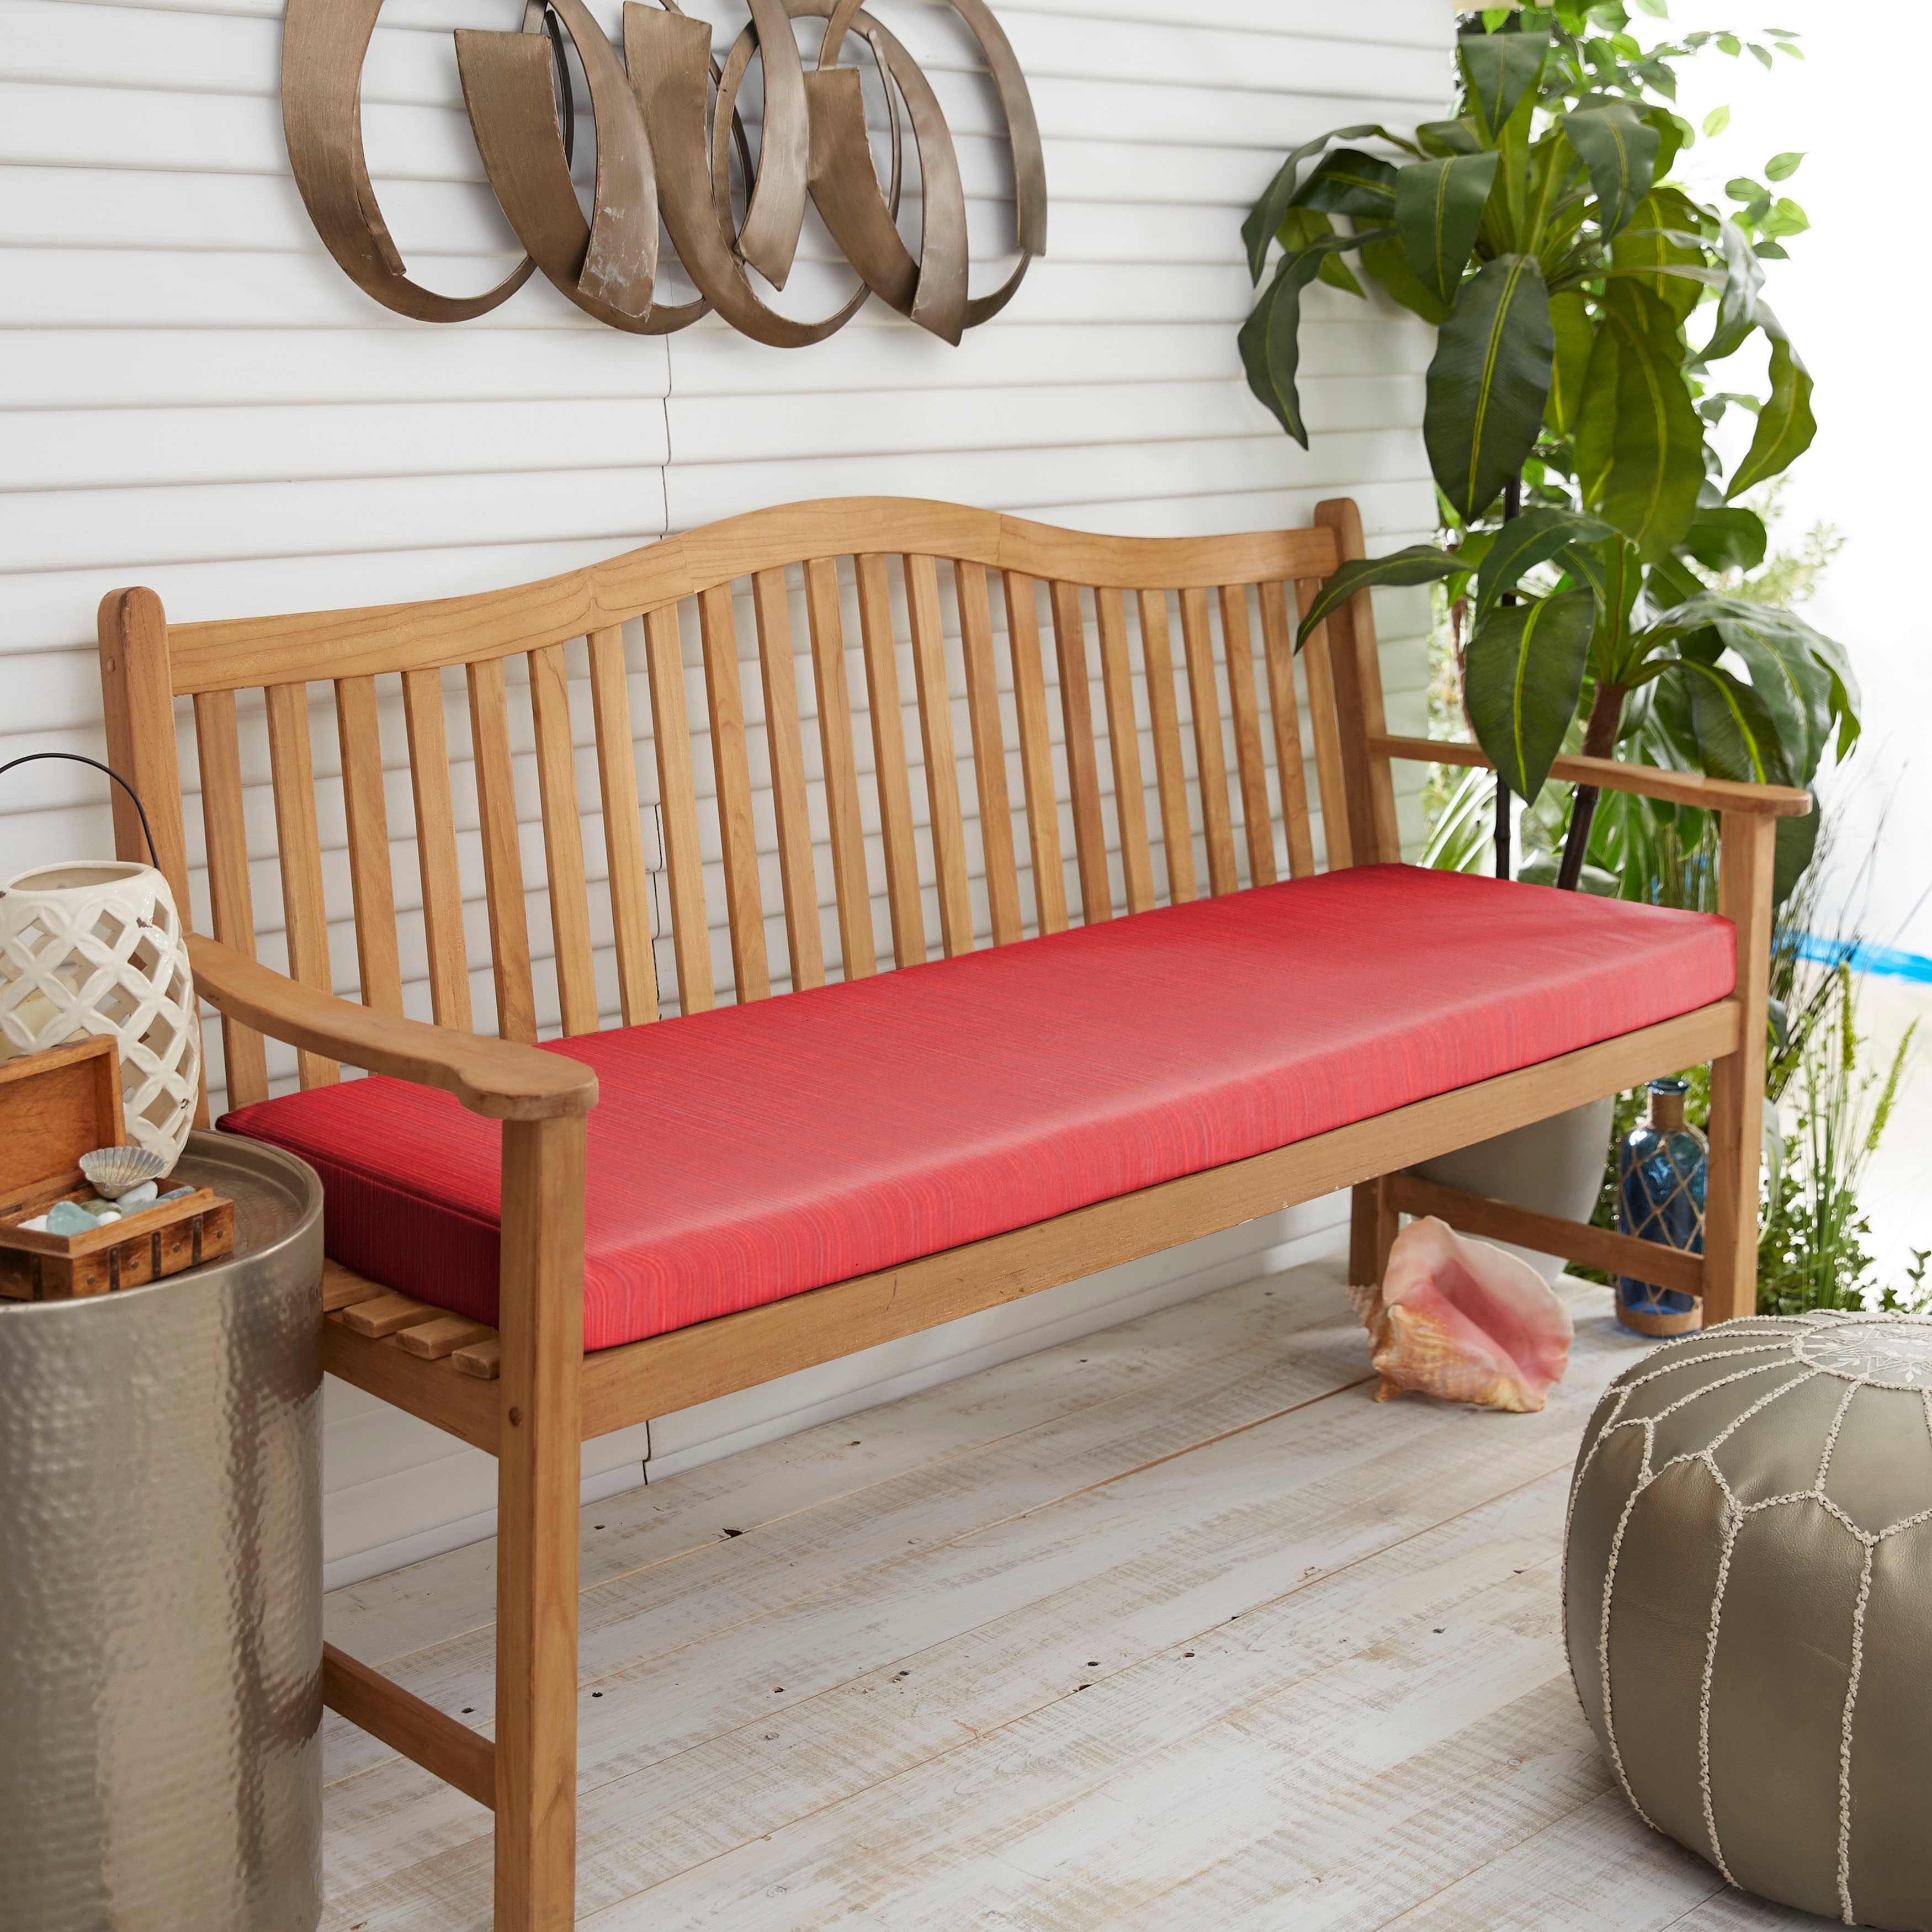 Sunbrella Textured Red Indoor Outdoor Bench Cushion 48 In W X 19 In D Overstock 28889987